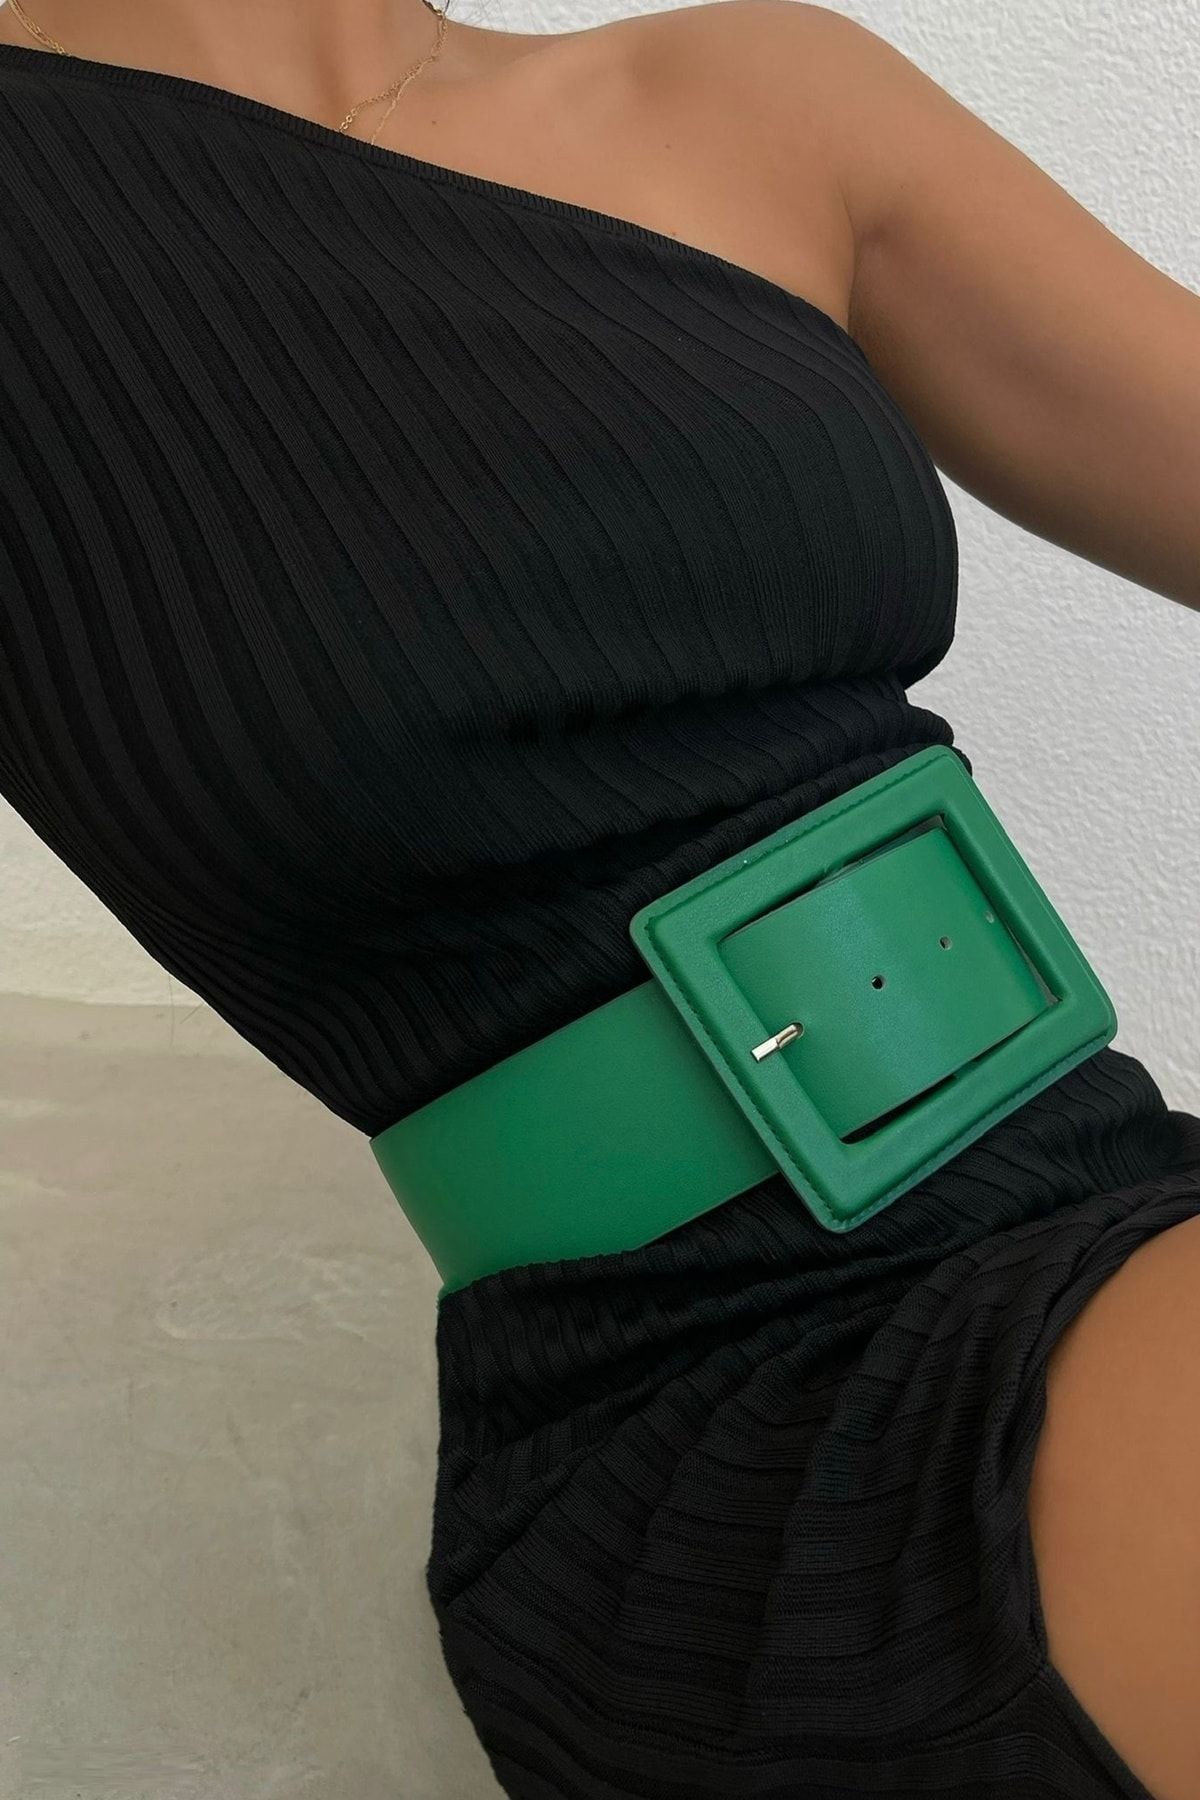 lovebox Kadın Yeşil Suni Deri Şık Tasarım Tokalı Geniş Bant Giyim Aksesuarı Kemer 15525